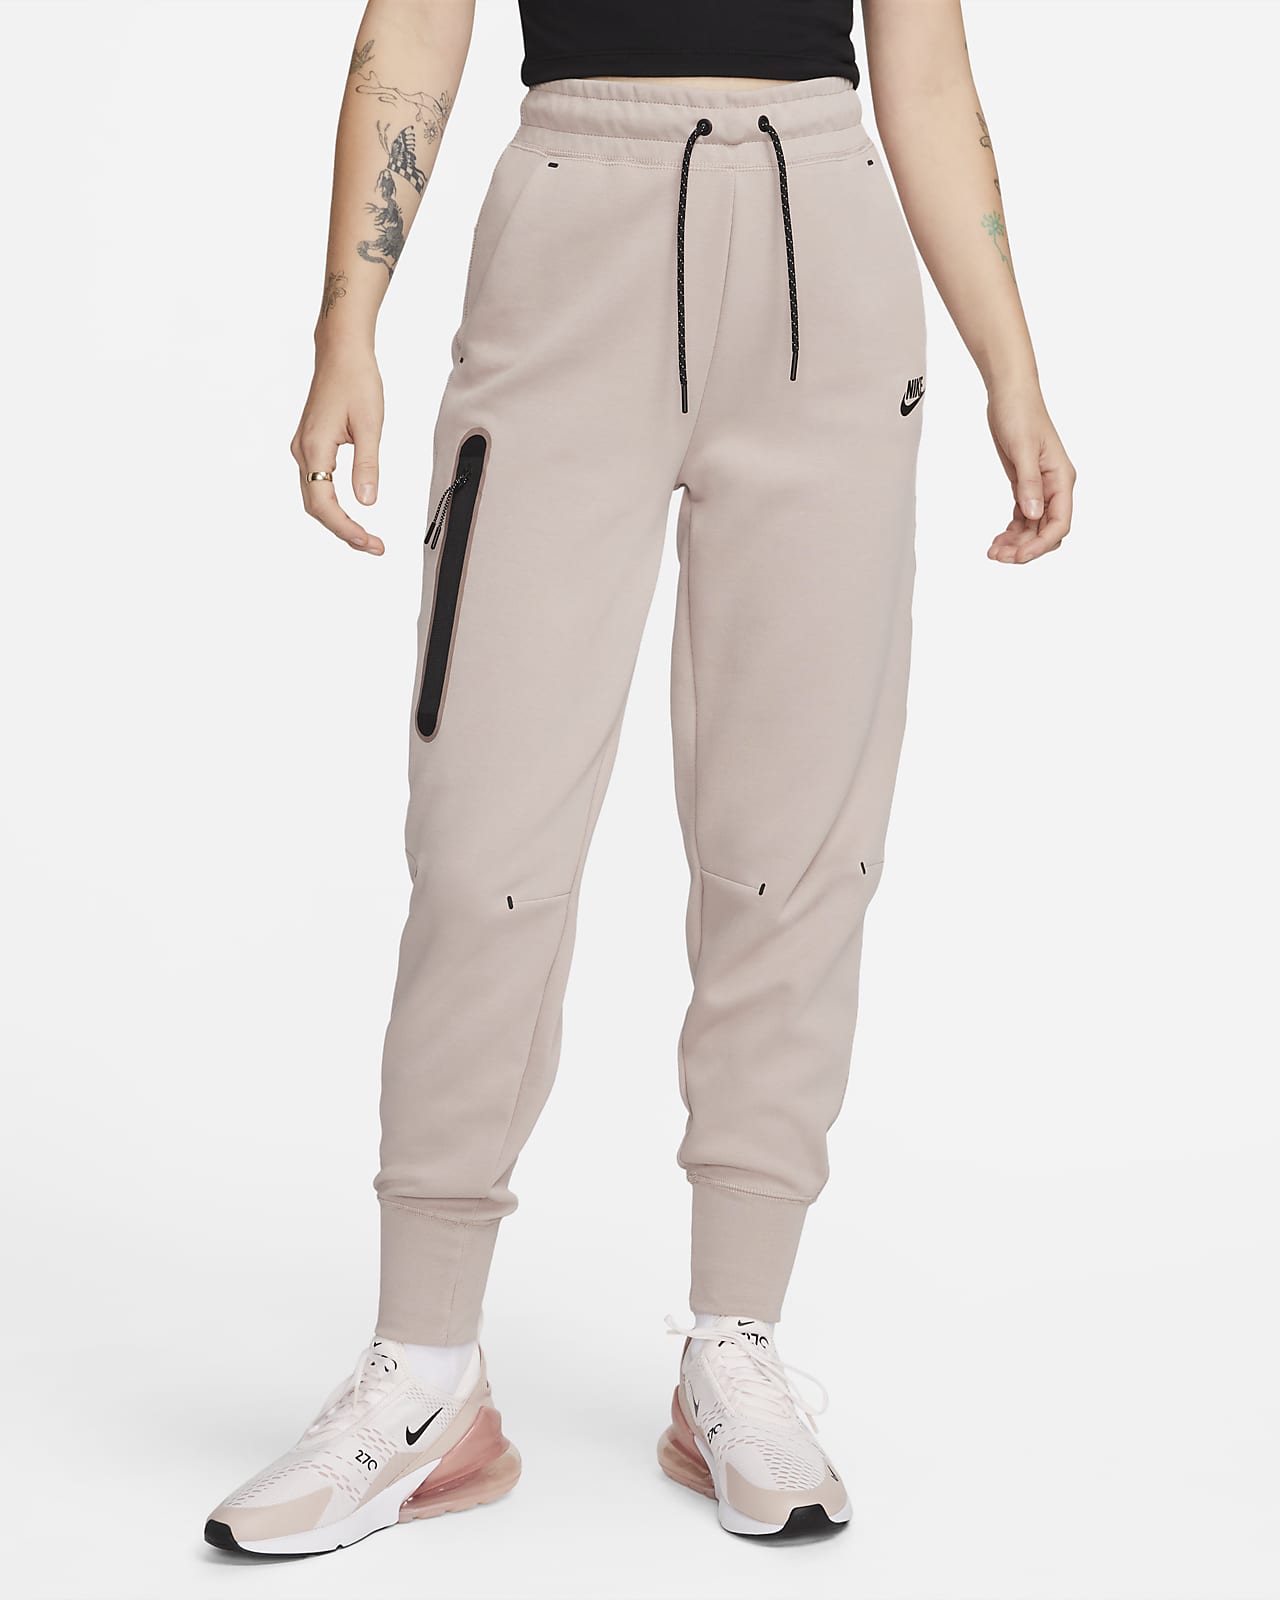 Pantalones mujer Nike Sportswear Tech Fleece. Nike.com